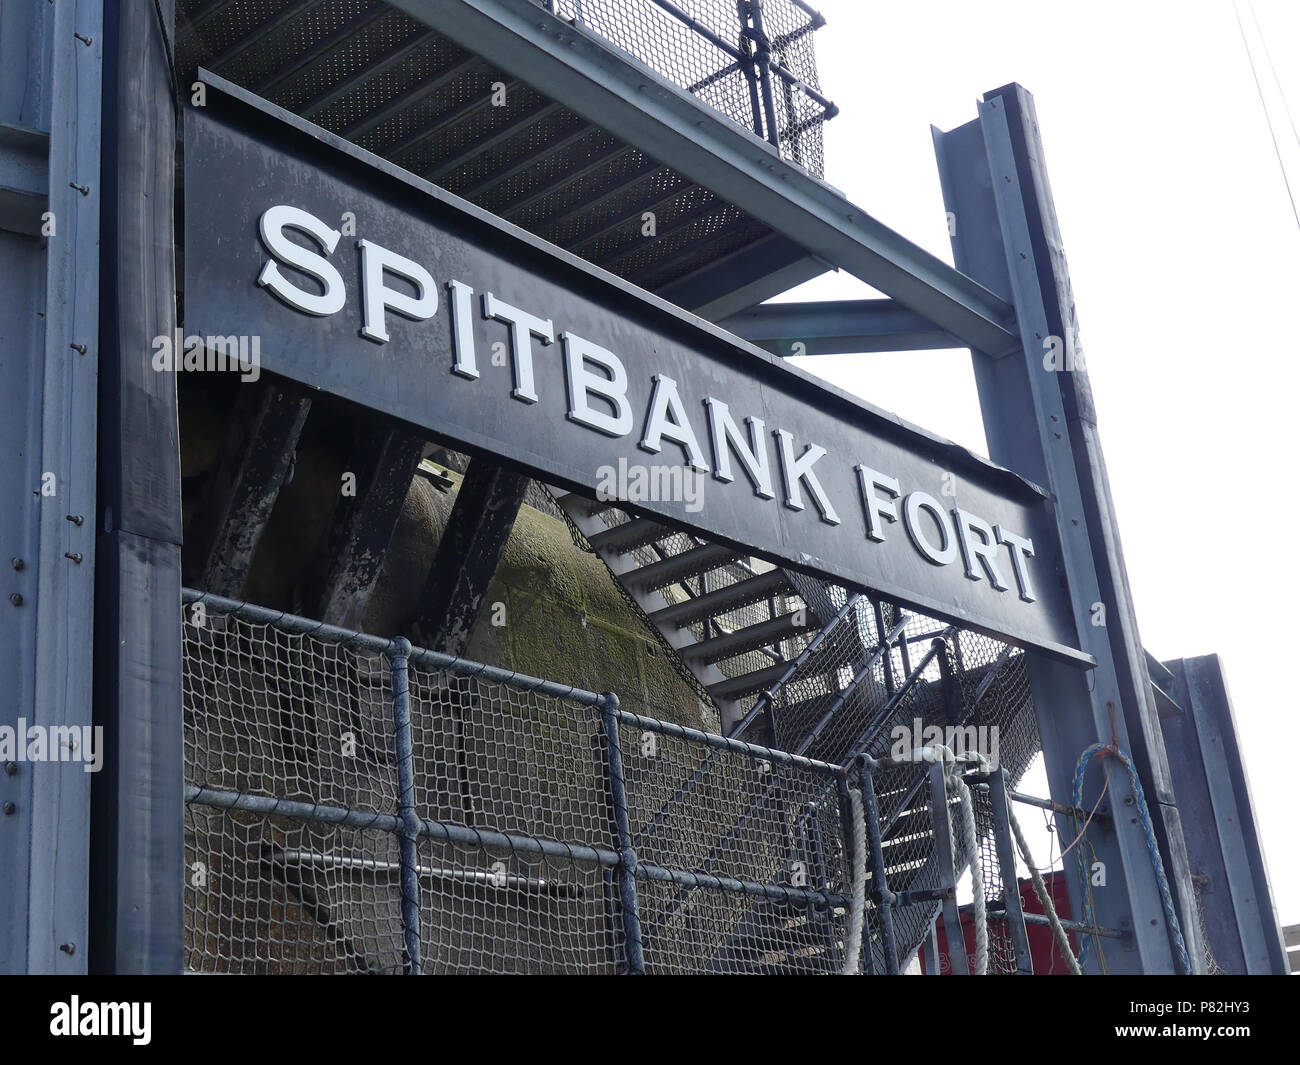 SPITBANK FORT dans le Solent. Photo : Tony Gale Banque D'Images